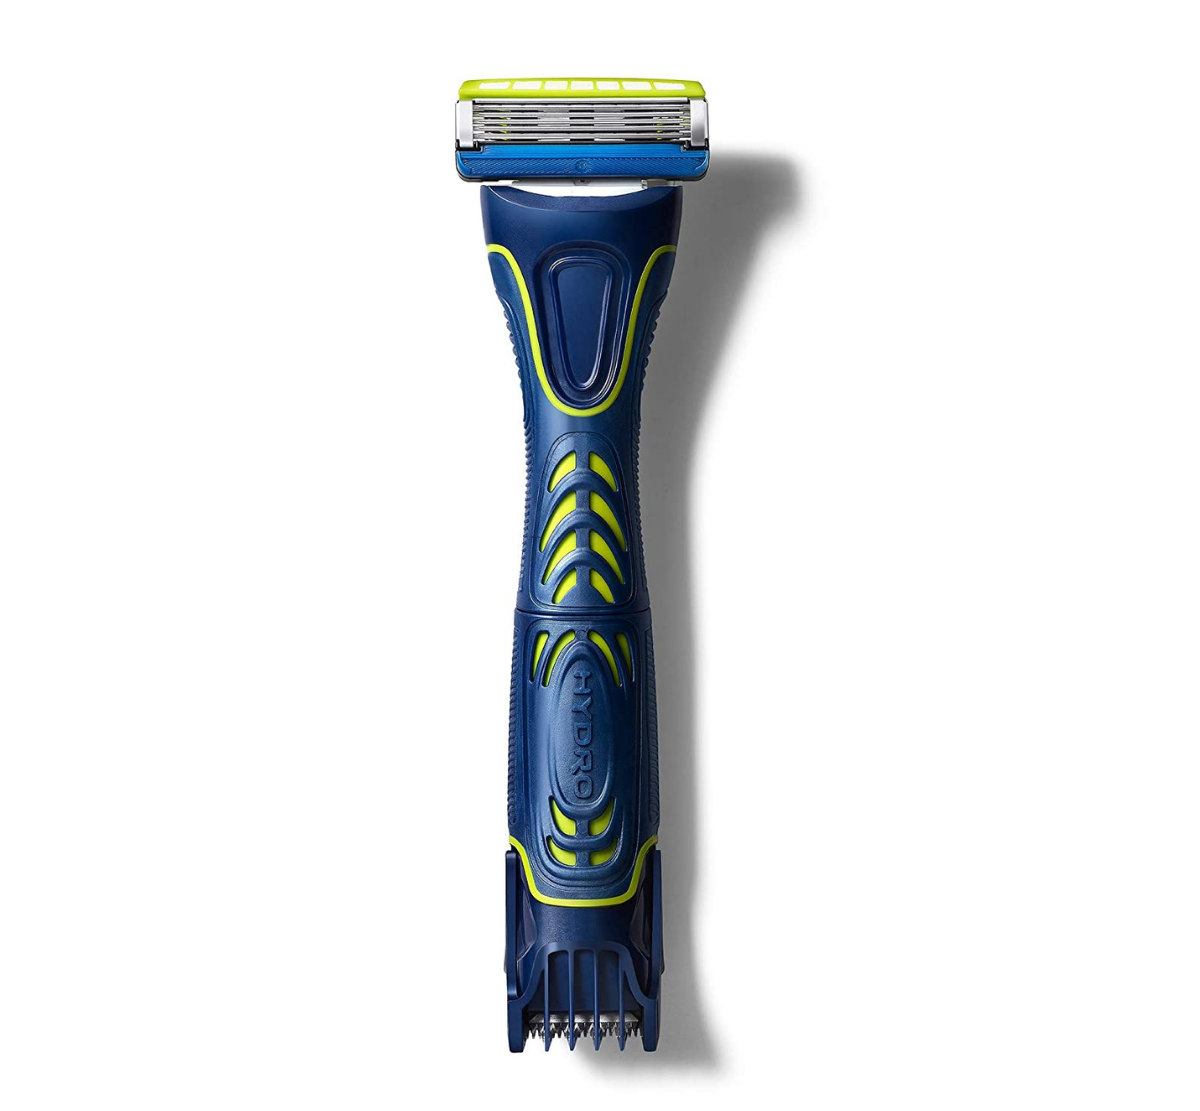 Schick Hydro combination razor and trimmer